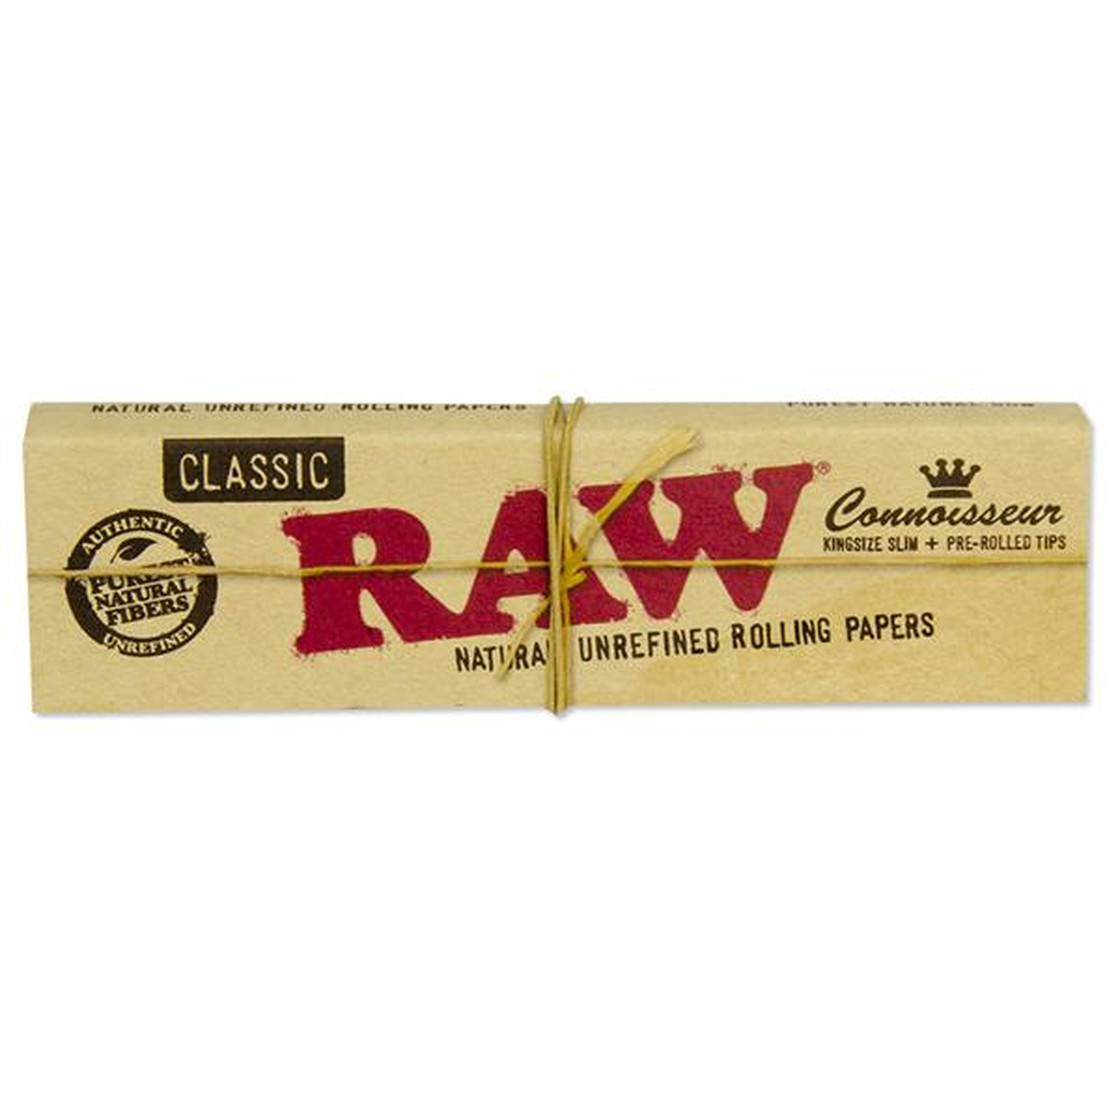 RAW 24 x 32 Blatt Filter Tips King Size Classic Connoisseur Paper Blättchen 